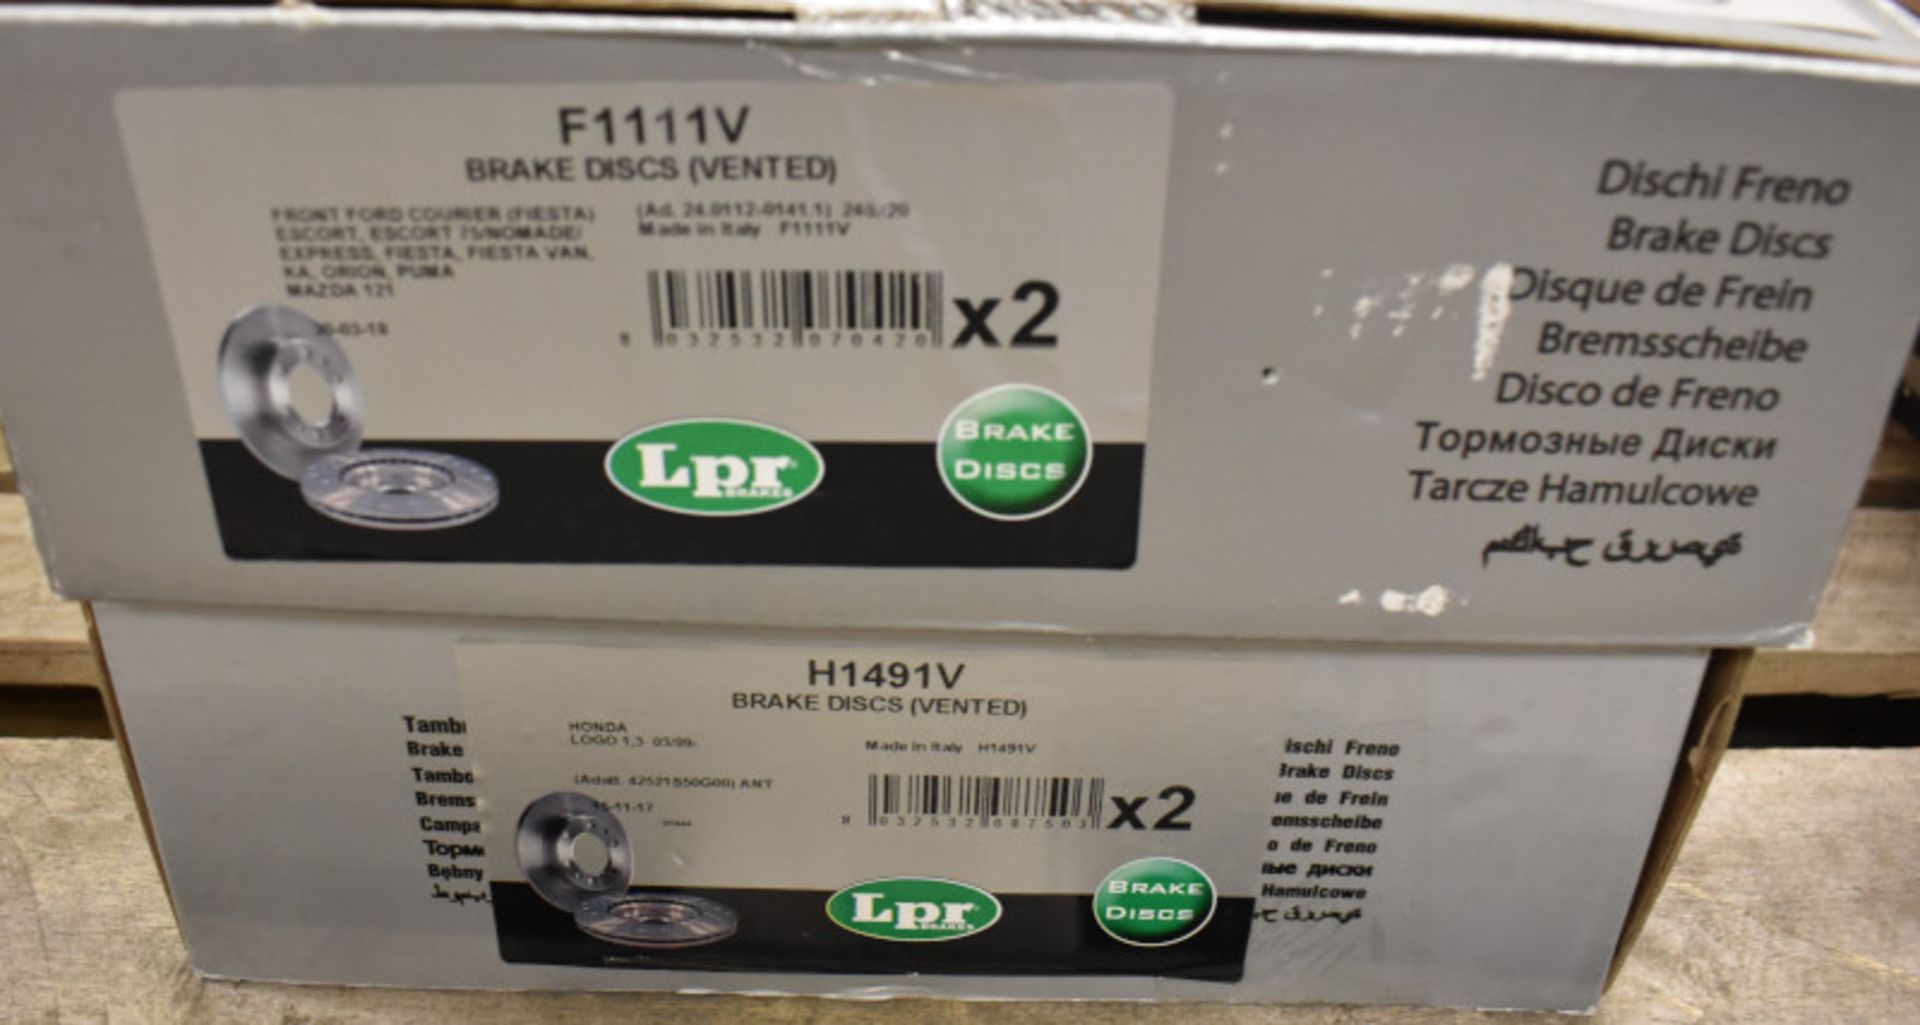 2x LPR Brake Disc Sets - models - F1111V & H1491V - Image 2 of 2